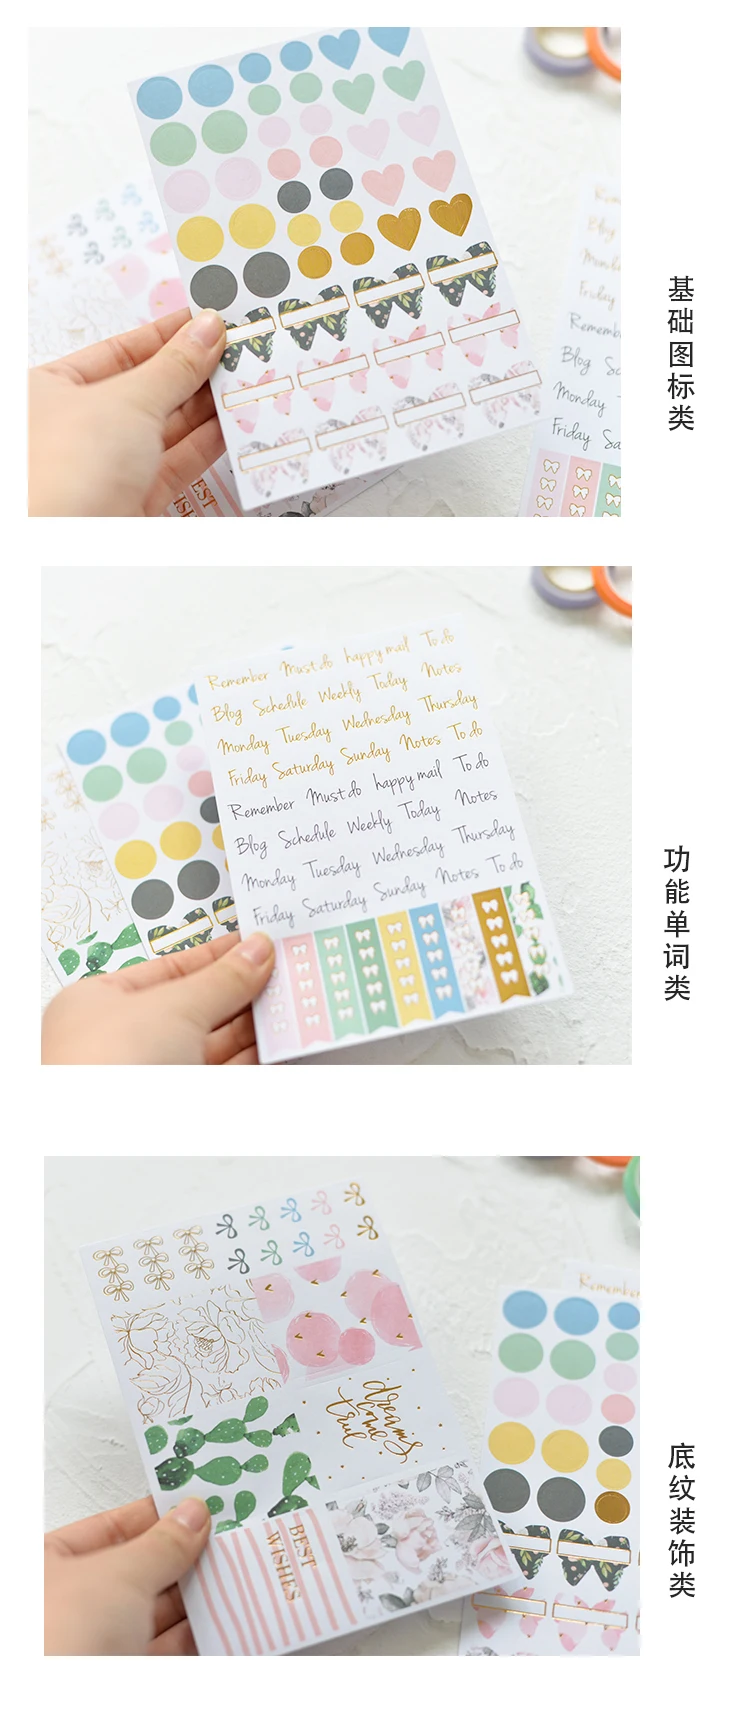 Lovedoki восстановление серии HAPPY planner Kikki. k блокнот декоративные наклейки s самоклеющиеся наклейки дневник в стиле Скрапбукинг Diy инструмент